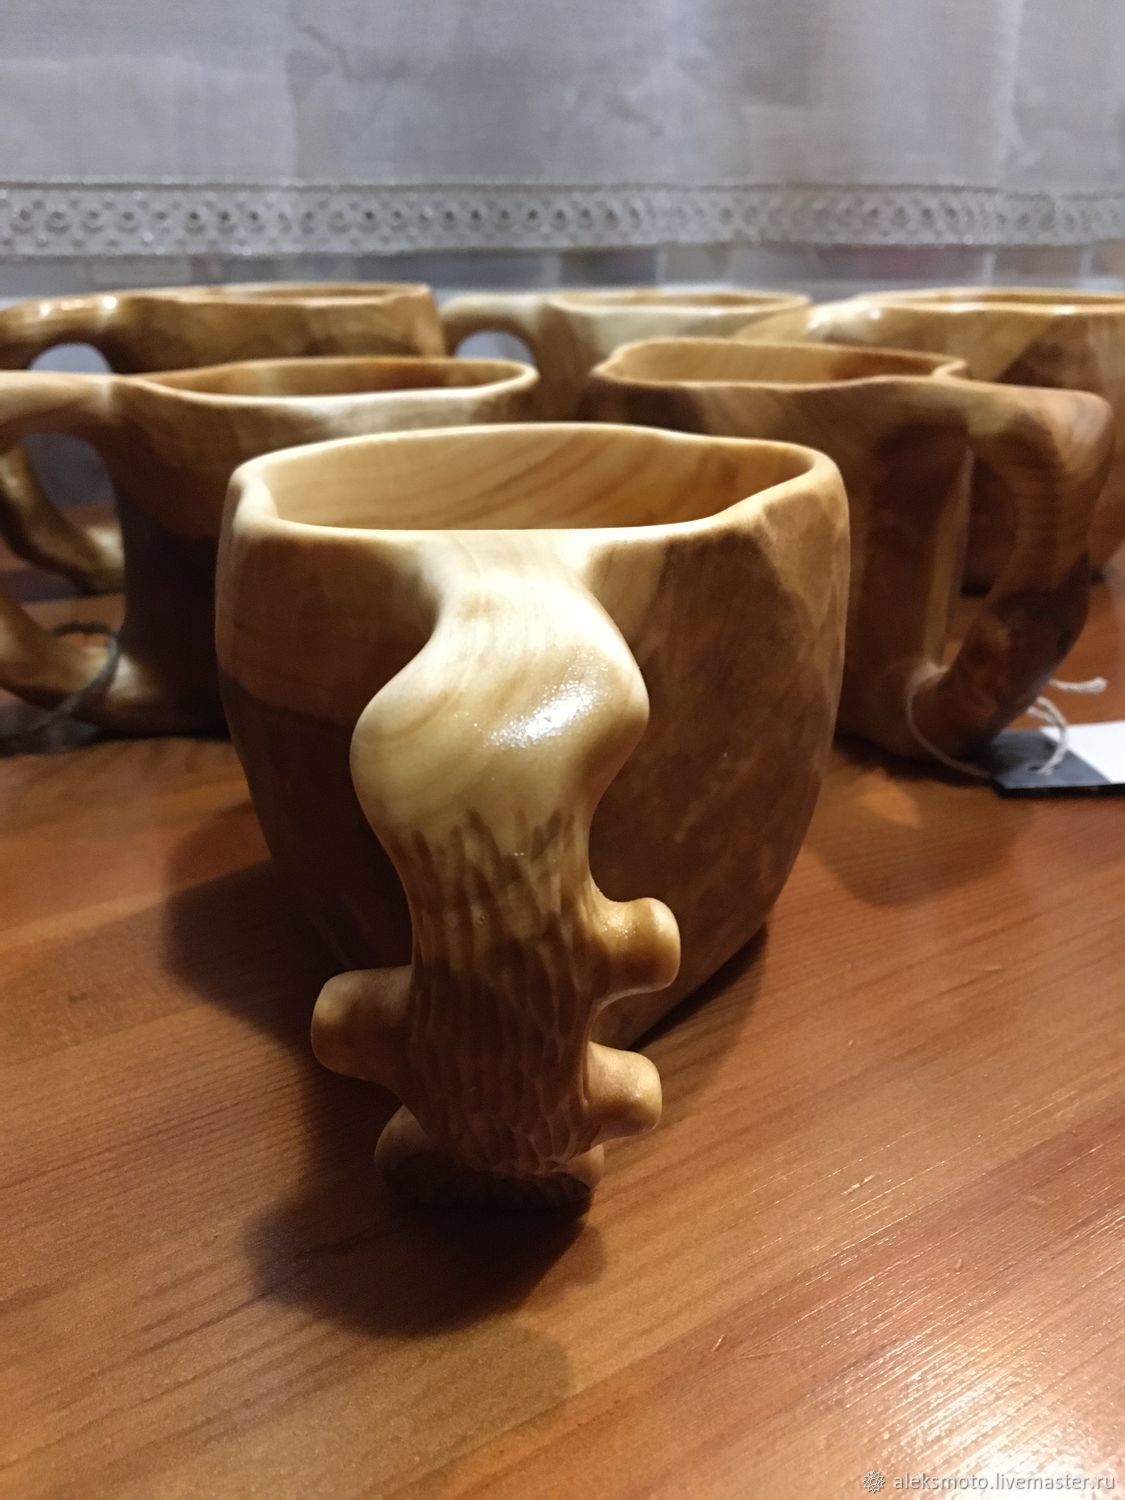 КАРАГАЧ - ЧАШКА ДЛЯ КОФЕ #1 / Elm a Cup Carving